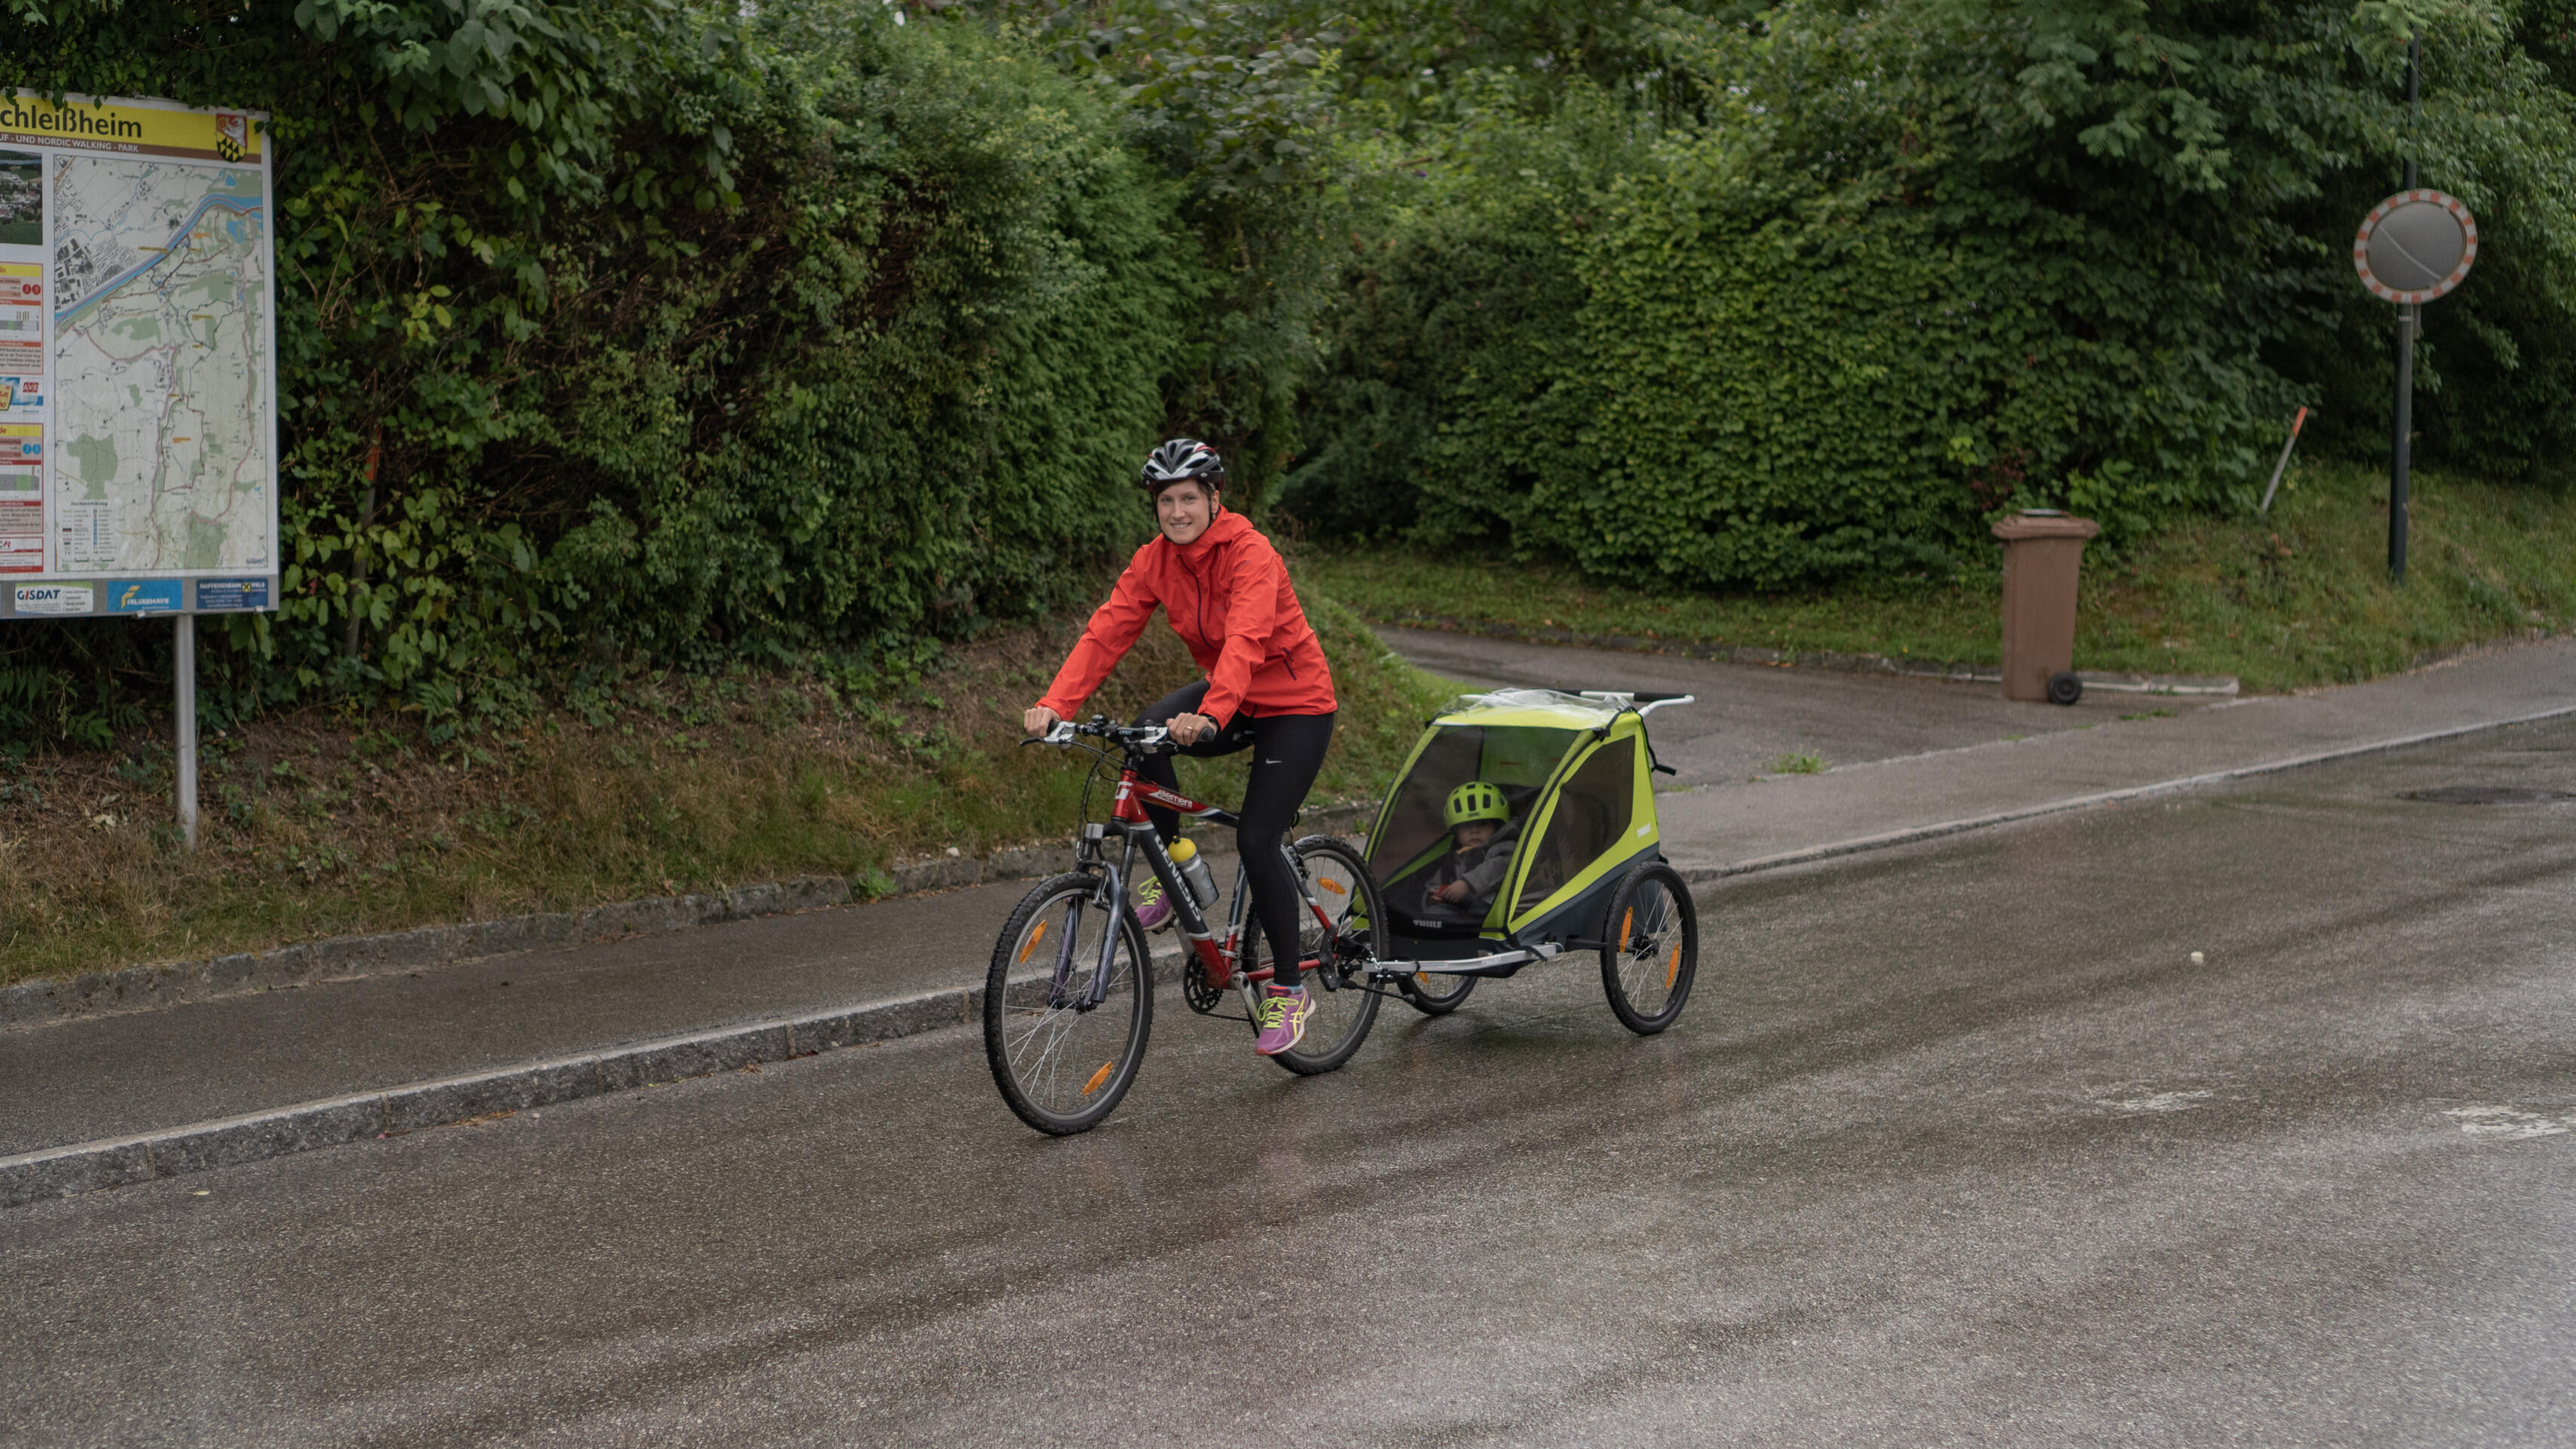 Dame fährt mit roter Regenjacke und Fahrrad mit Kinderanhänger auf einer nassen Straße